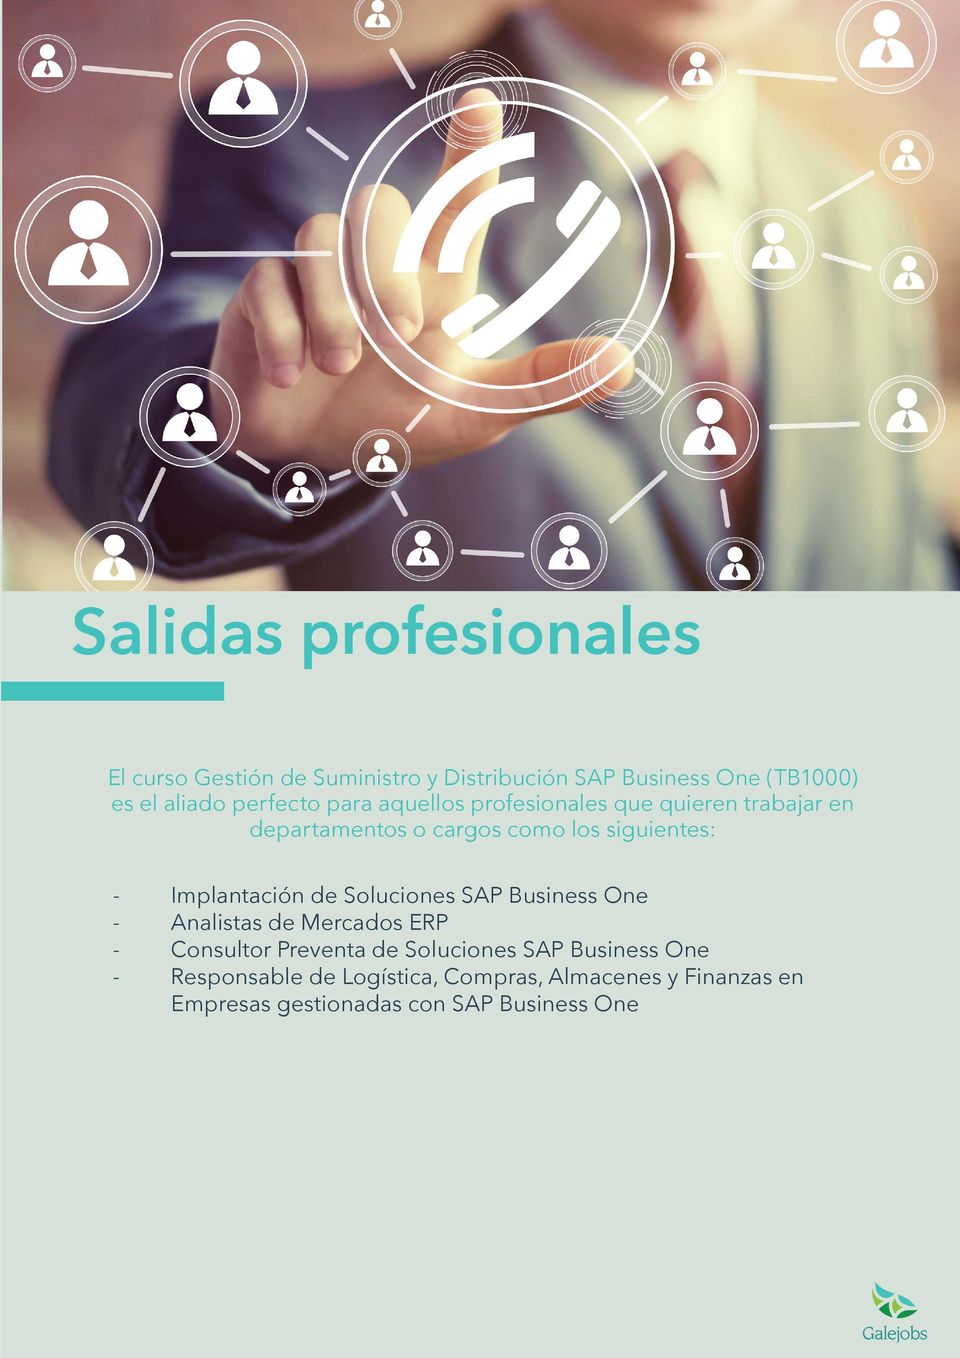 Implantación de Soluciones SAP Business One - Analistas de Mercados ERP - Consultor Preventa de Soluciones